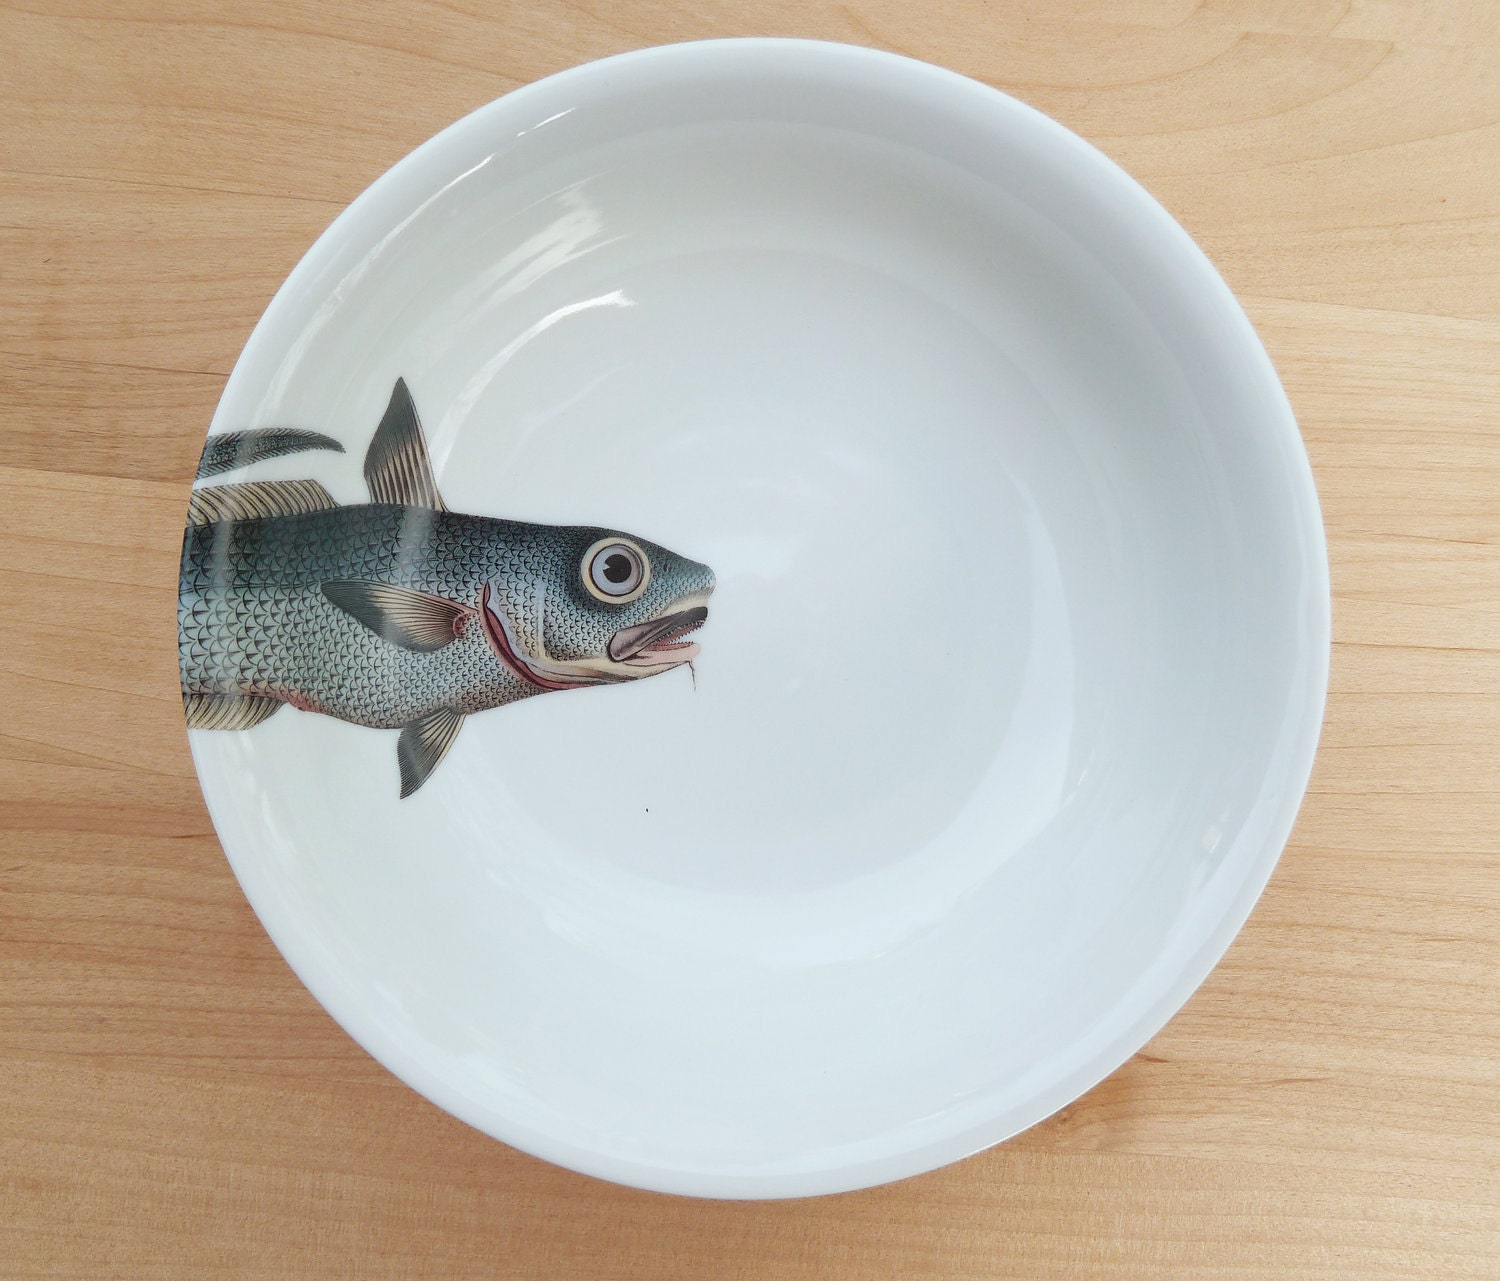 fishy fish Cereal Bowl- "barbichette"